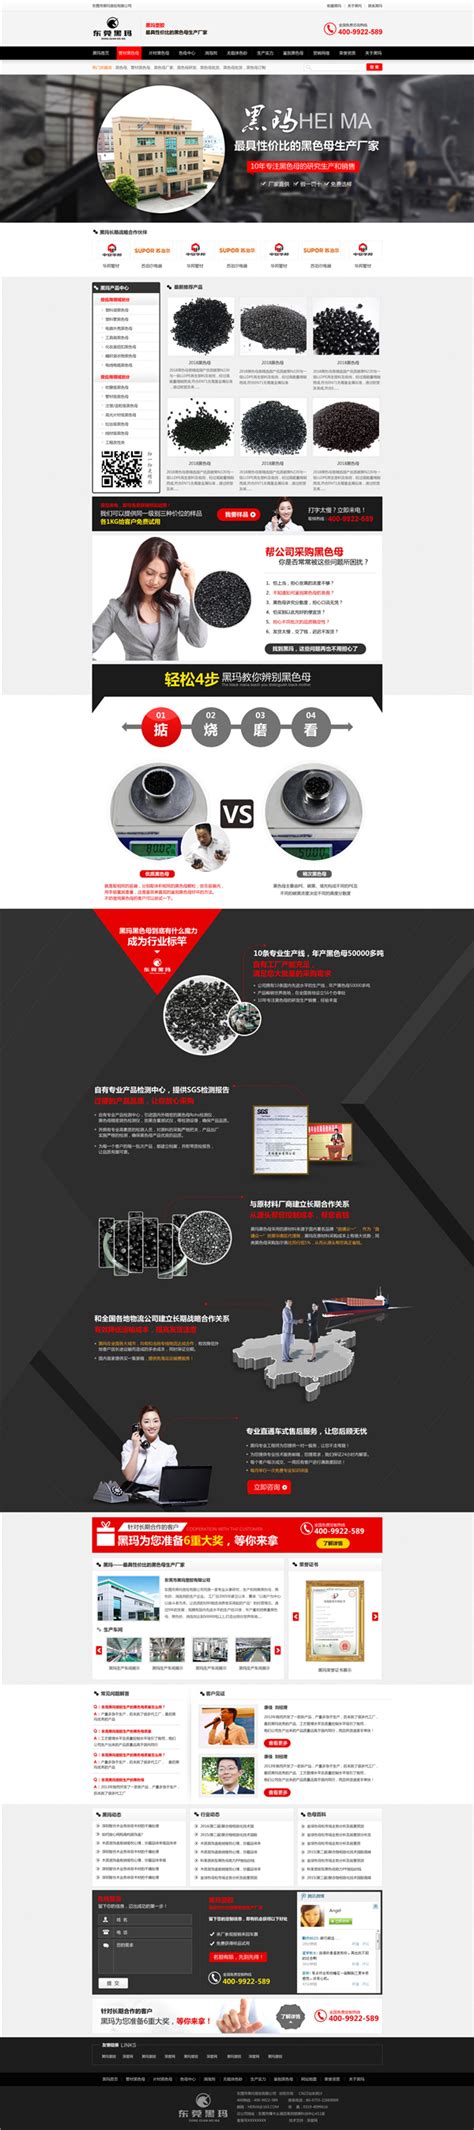 塑胶公司画册设计-塑胶行业画册设计-优质塑胶行业画册设计-广州古柏广告策划有限公司